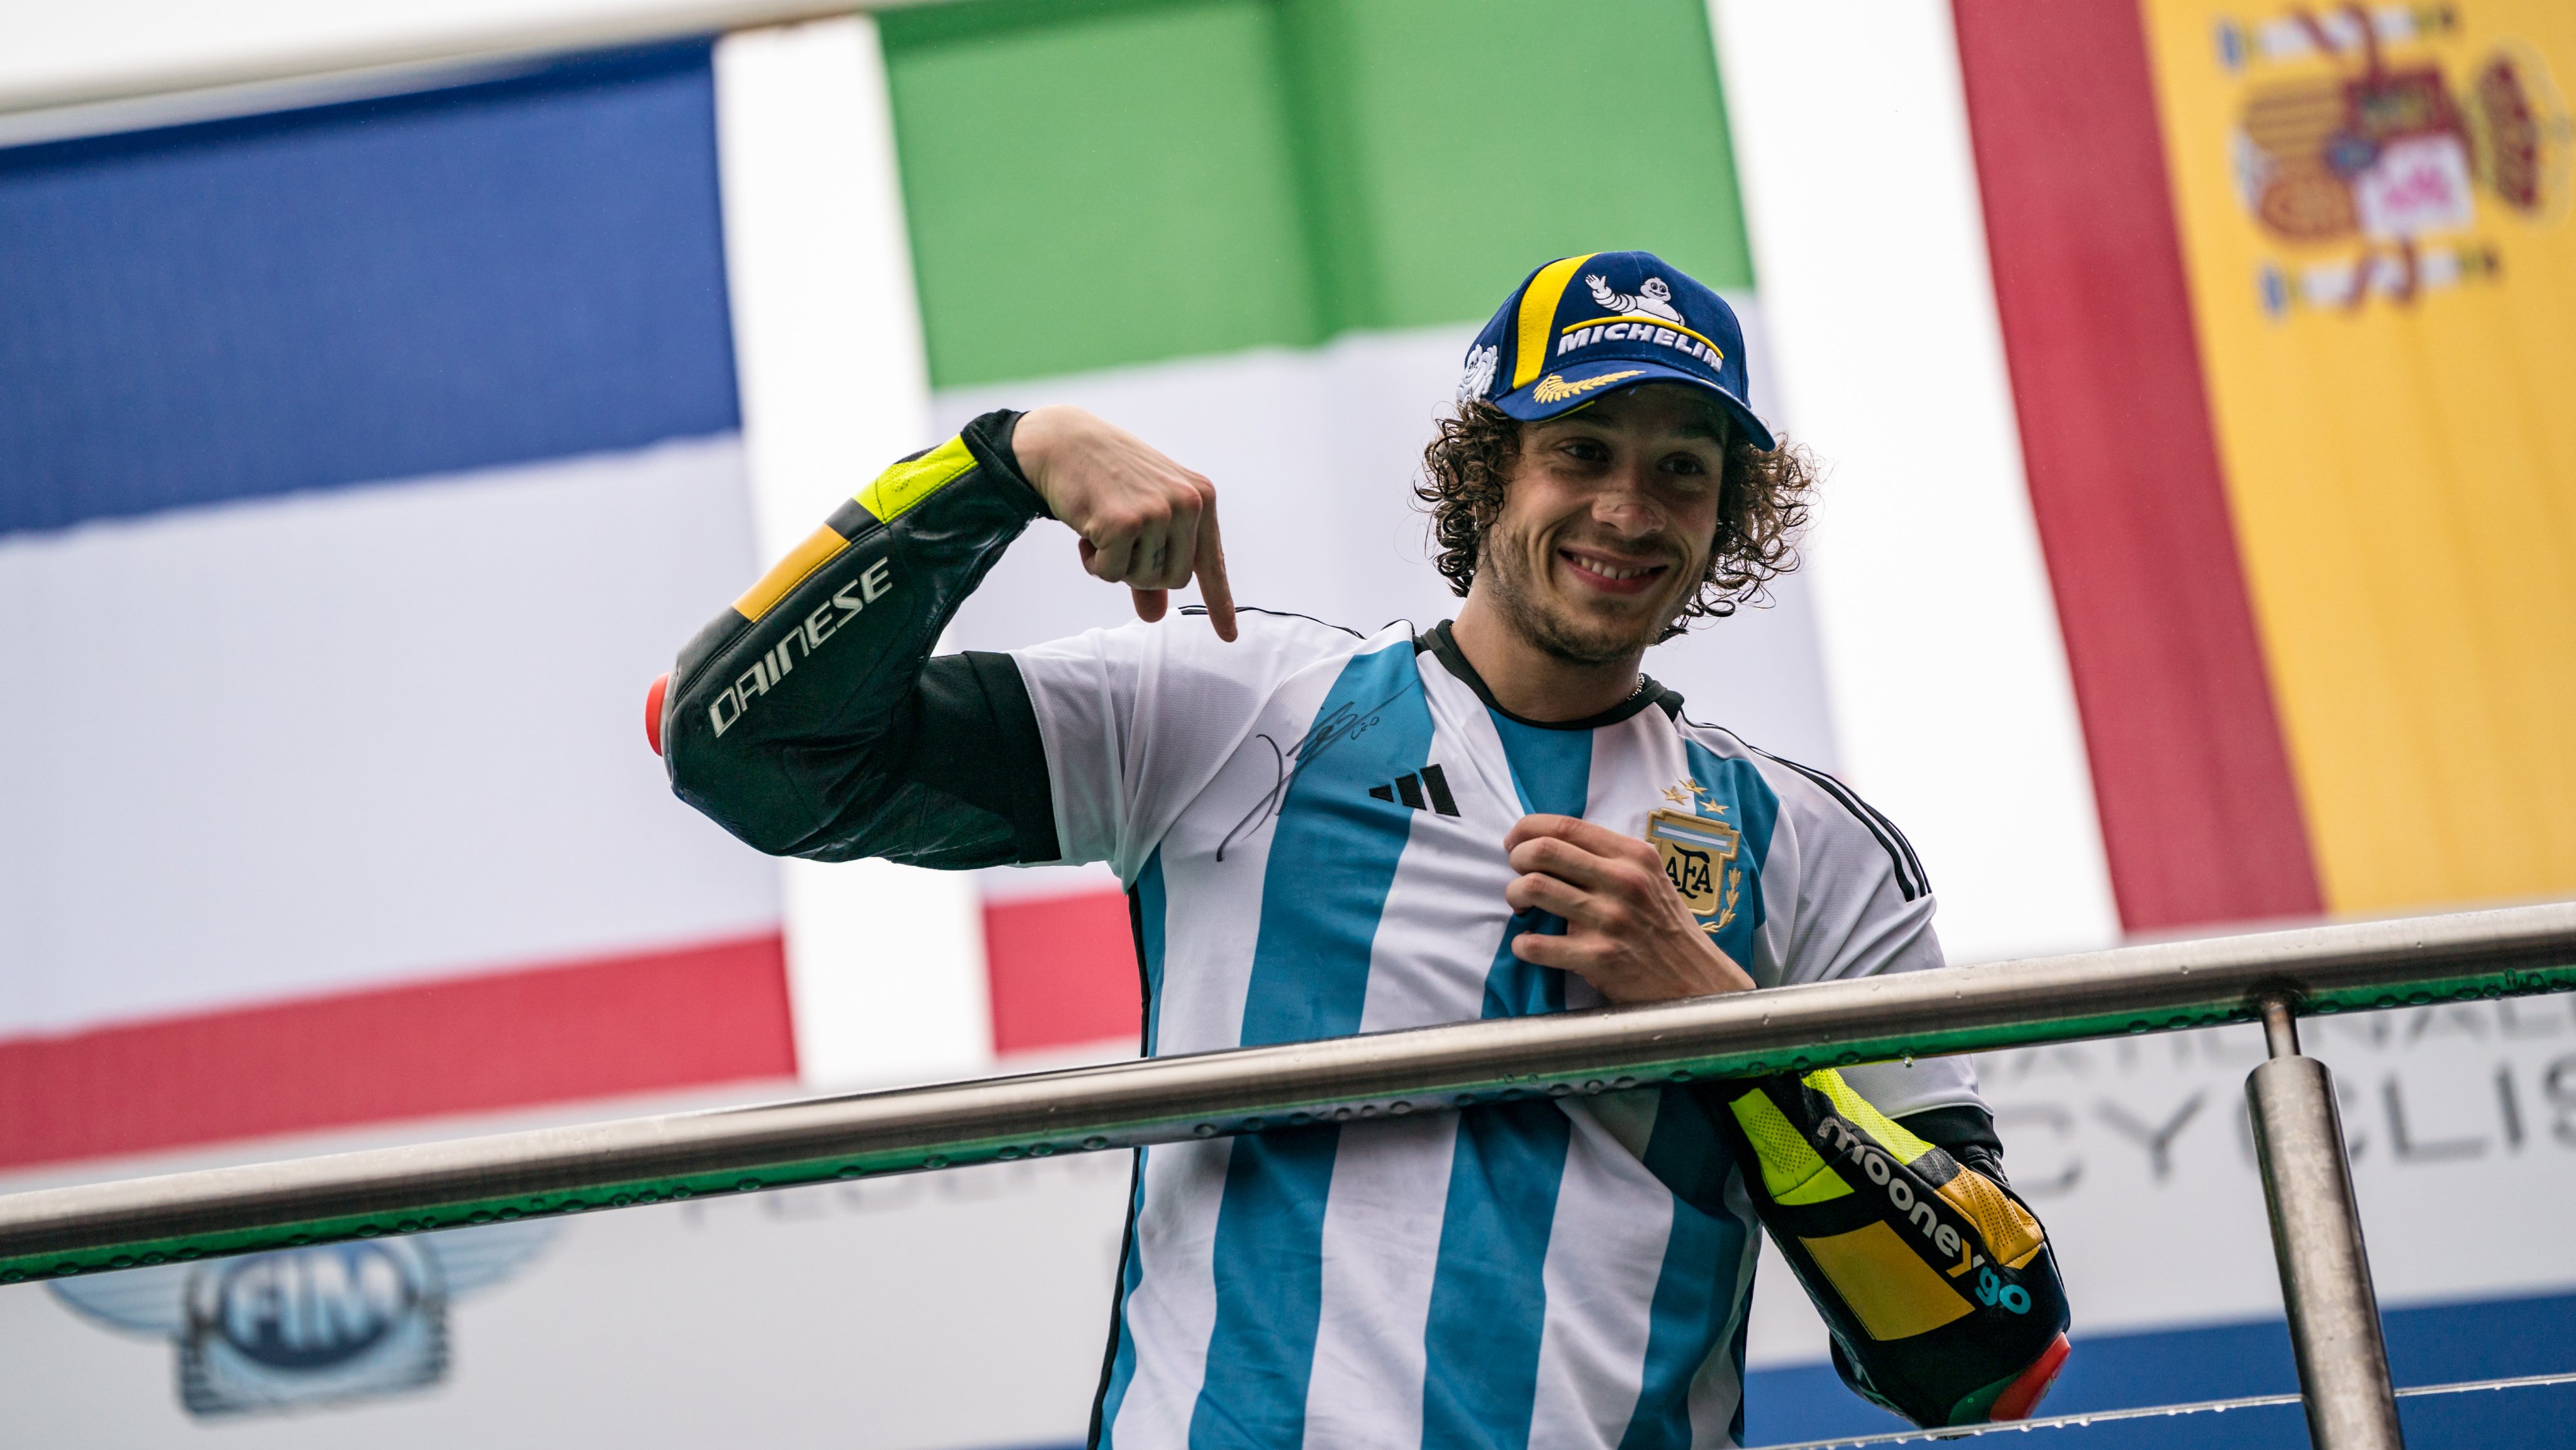 Bezzecchi conquista a 1ª vitória da carreira na Etapa da Argentina de MotoGP